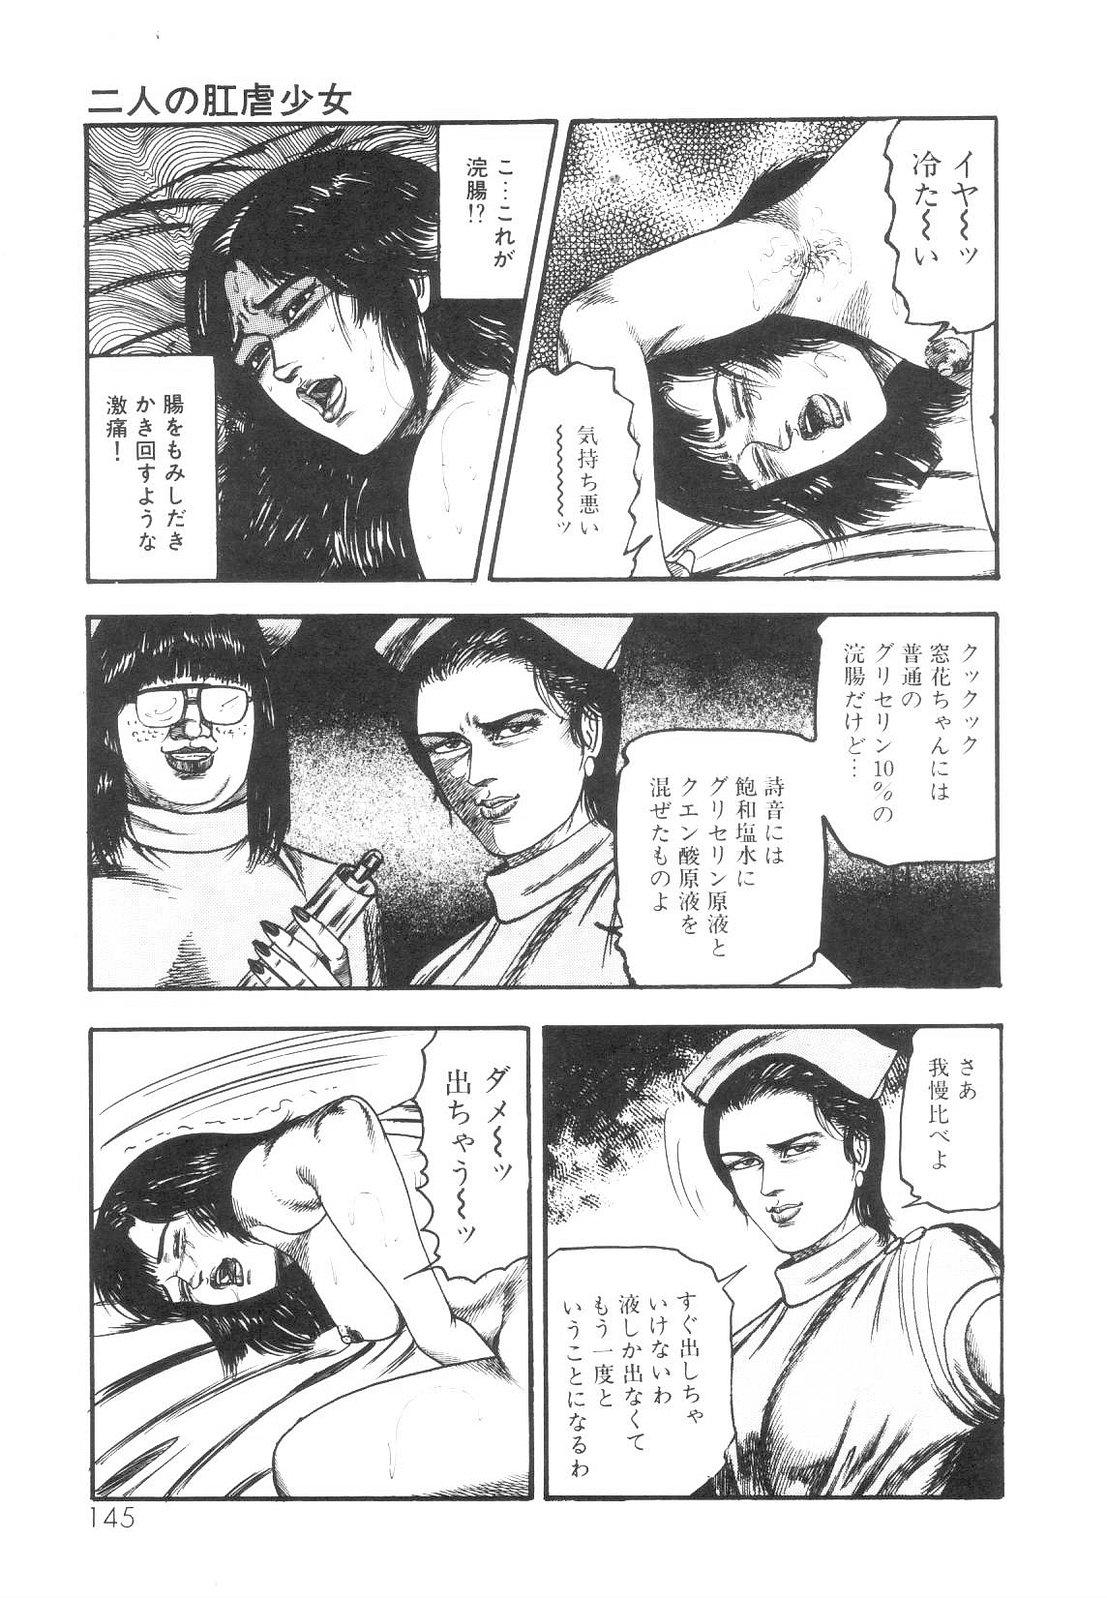 Shiro no Mokushiroku Vol. 1 - Sei Shojo Shion no Shou 145